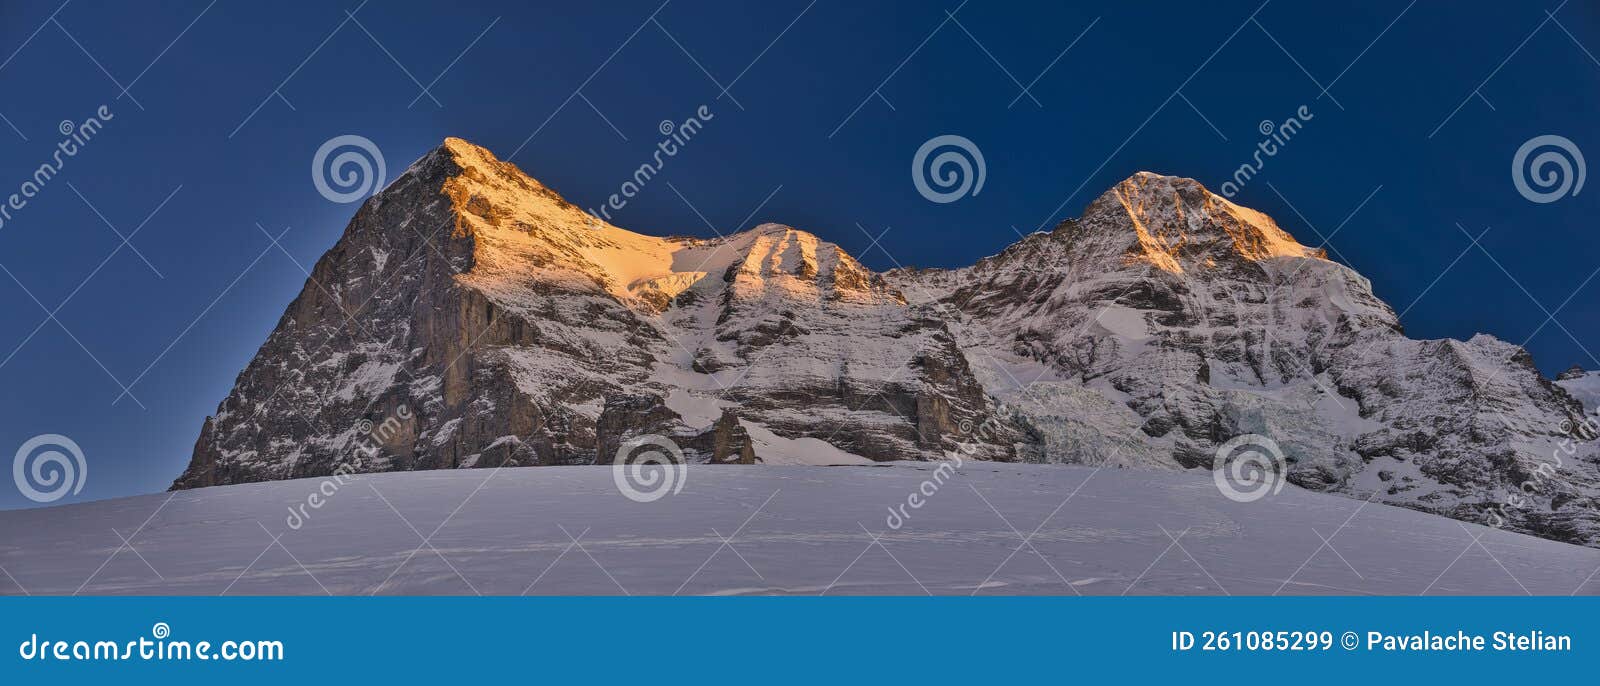 kleine scheidegg eiger and jungfraujoch bernese alps